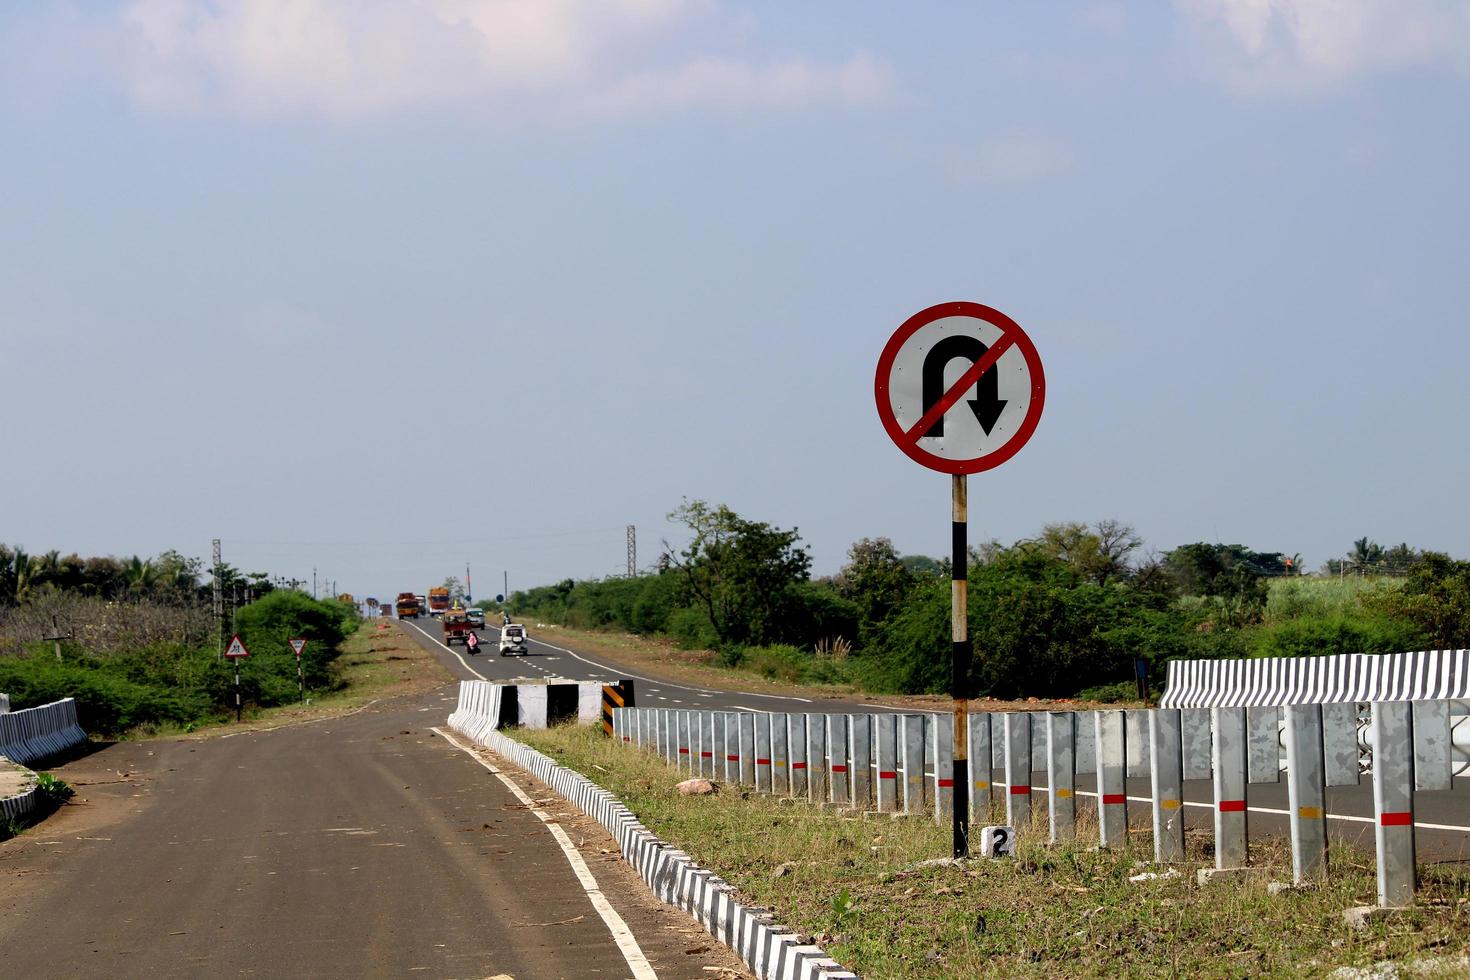 vijayapura, karnataka, 26 de noviembre de 2021 - señal de giro prohibido en la carretera nacional 218. foto